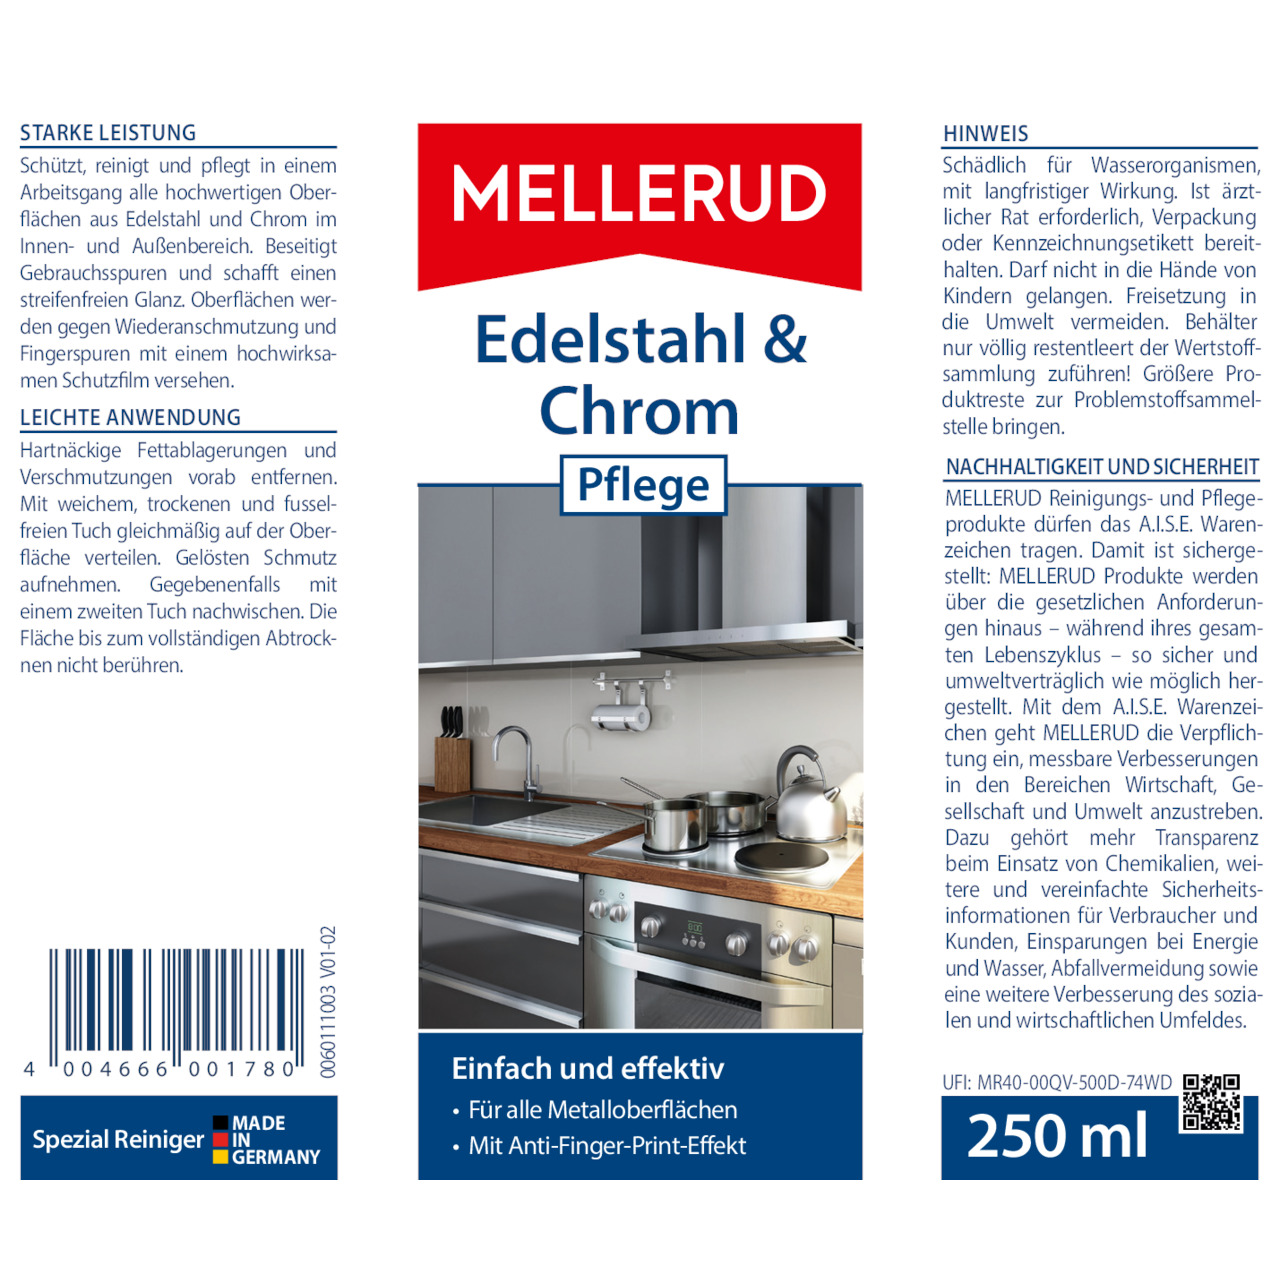 Edelstahl & Chrom Pflege 0,25 l